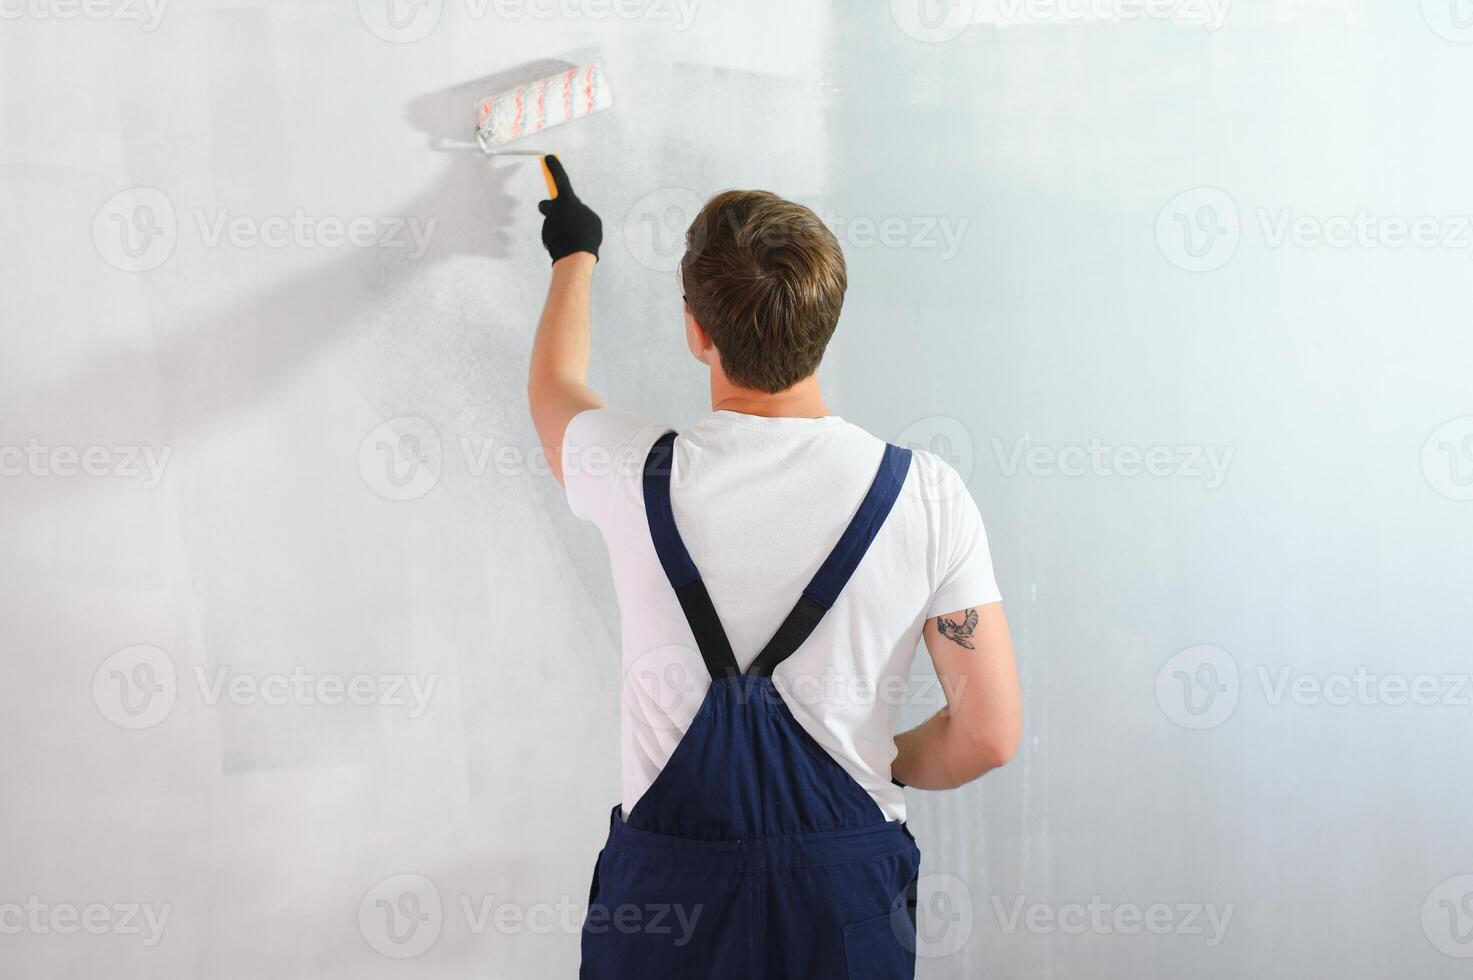 jovem trabalhador pintando parede no quarto foto